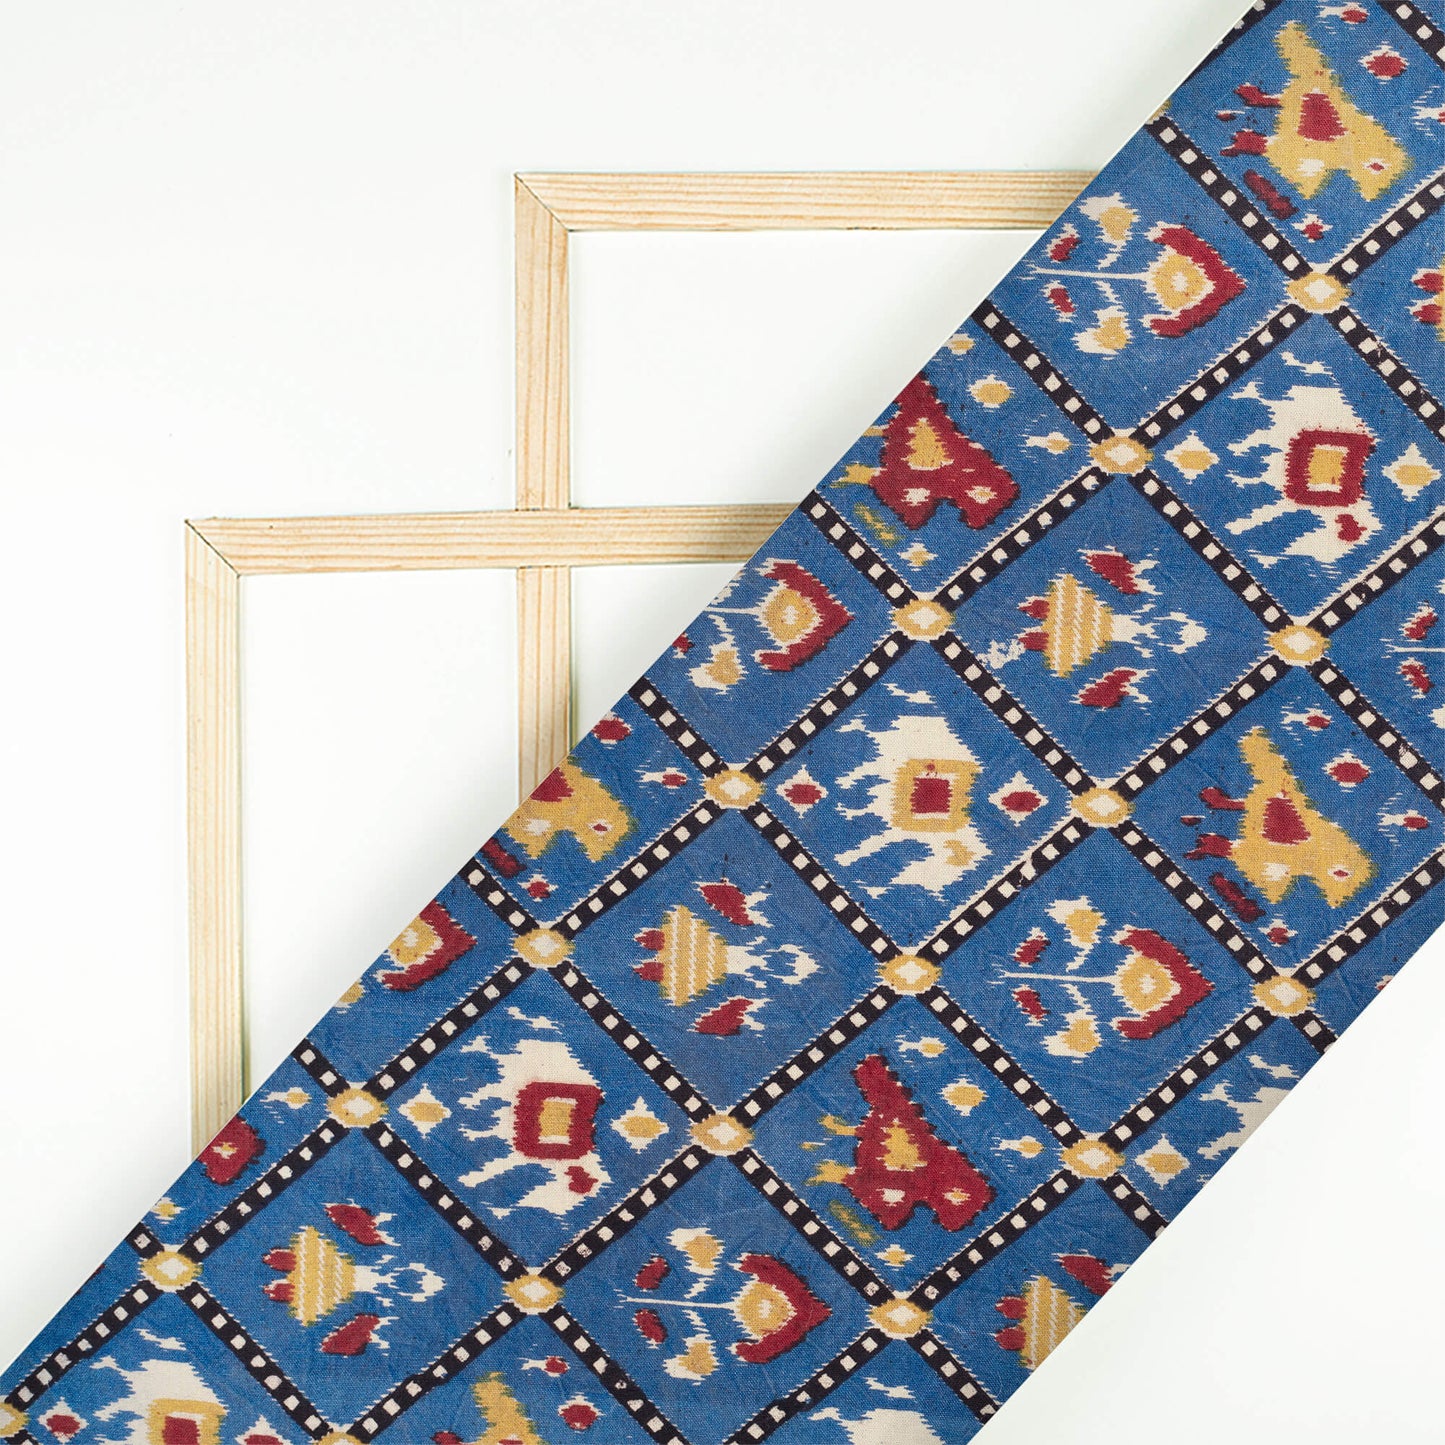 Yale Blue And Mustard Yellow Patola Pattern Screen Print Kalamkari Cotton Fabric - Fabcurate